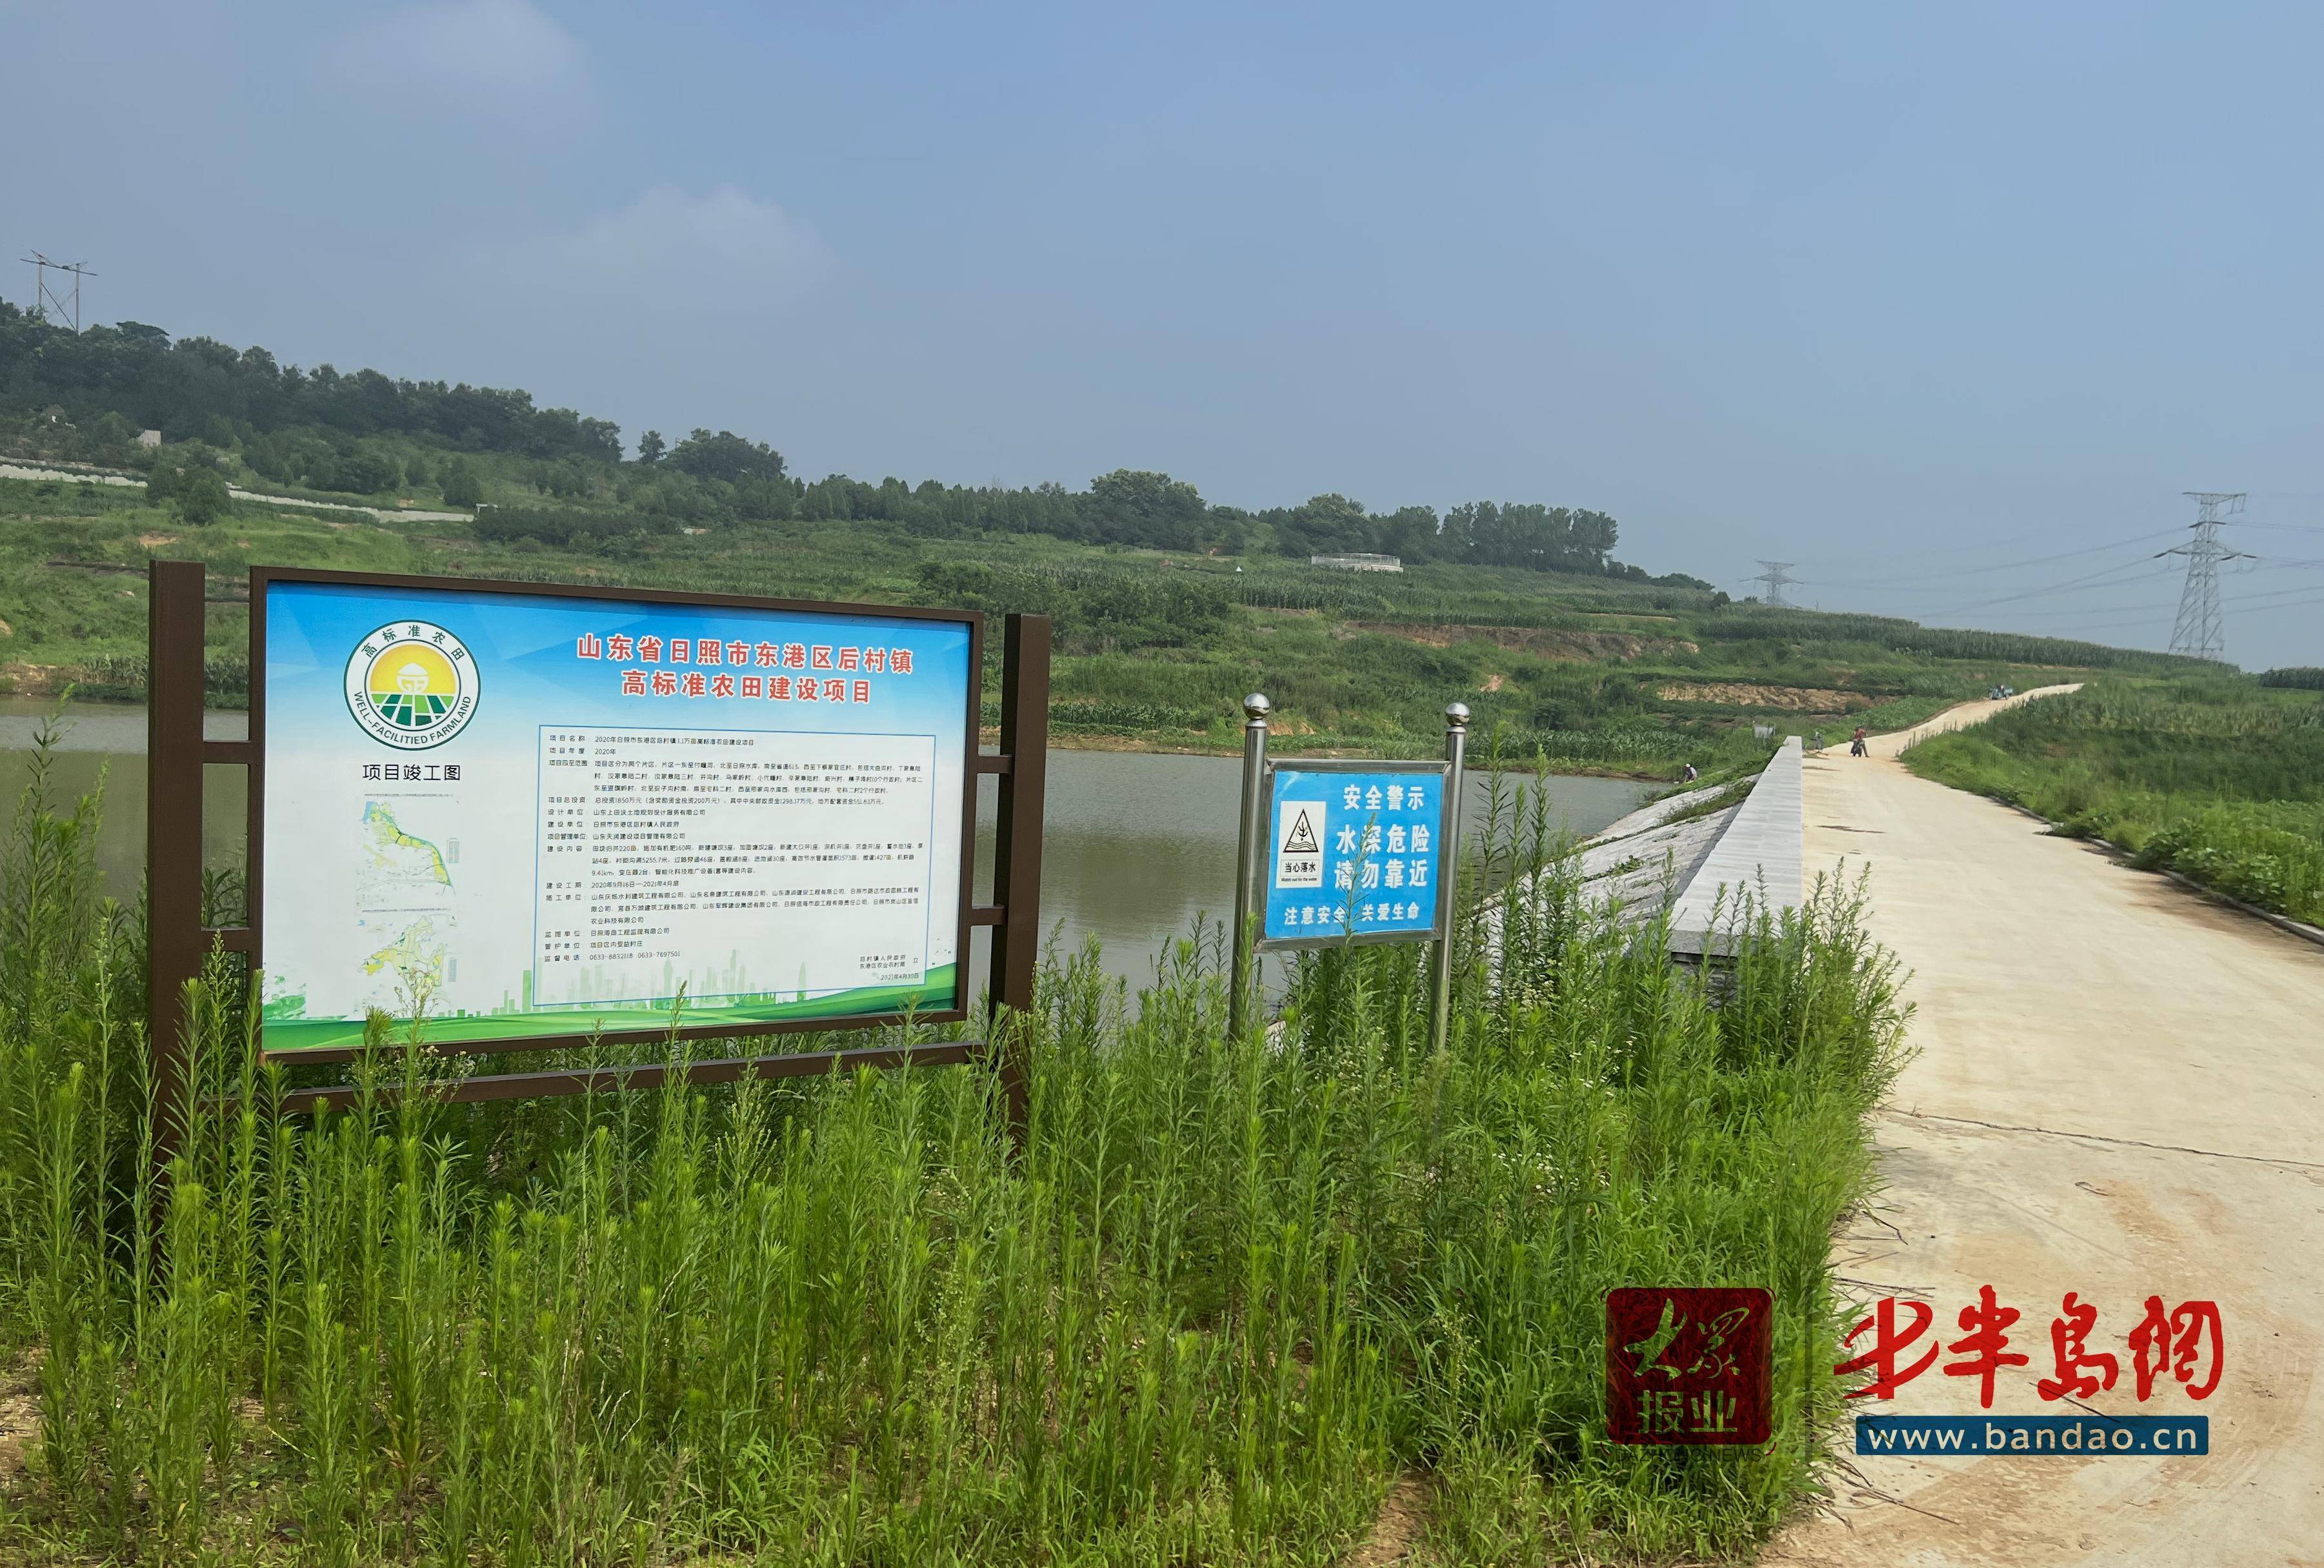 高效农业+生态旅游+特色产业 东港区正全力打造乡村振兴新样板